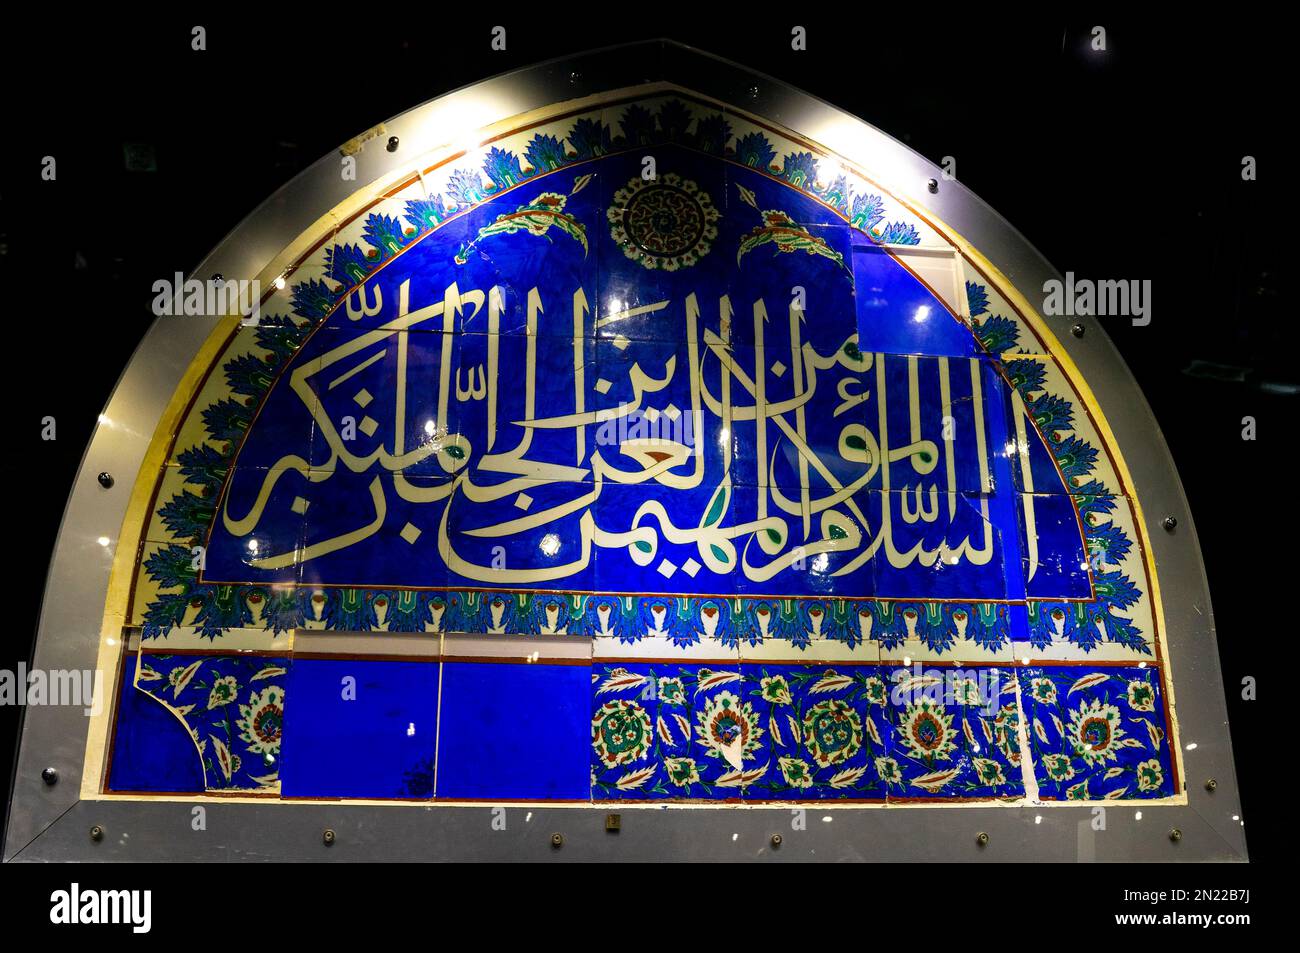 Farbenfrohe dekorative osmanische Dekoration aus der Bursa Sinan Pasa Moschee, 16. Jahrhundert. Ankara-Ethnographie-Museum Türkei Stockfoto